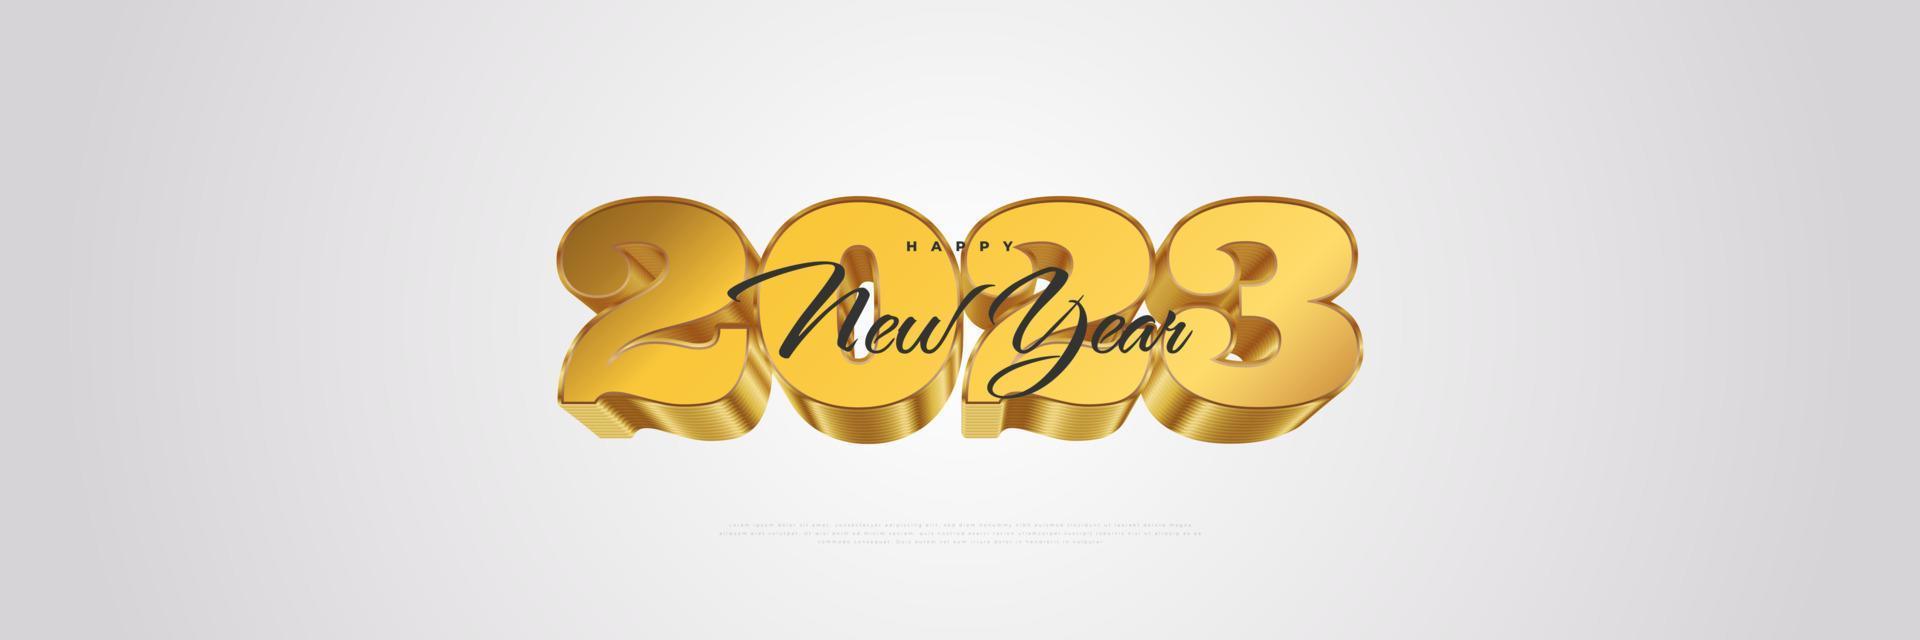 Frohes neues Jahr 2023 mit 3D-Goldzahlen isoliert auf weißem Hintergrund. neujahrsdesign für banner, poster und grußkarte vektor